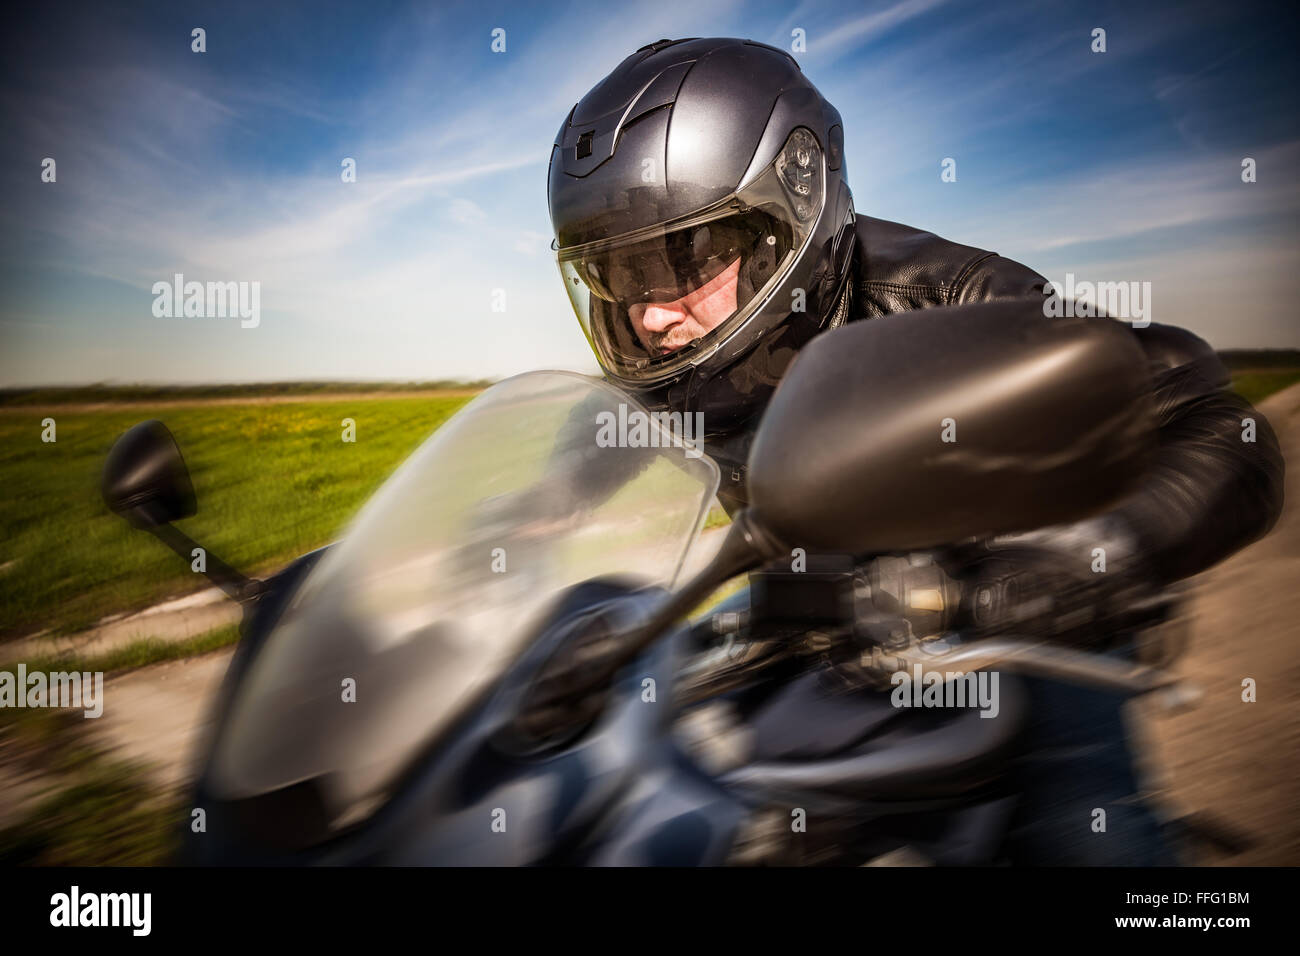 Biker dans casque et blouson de cuir racing sur la route Banque D'Images